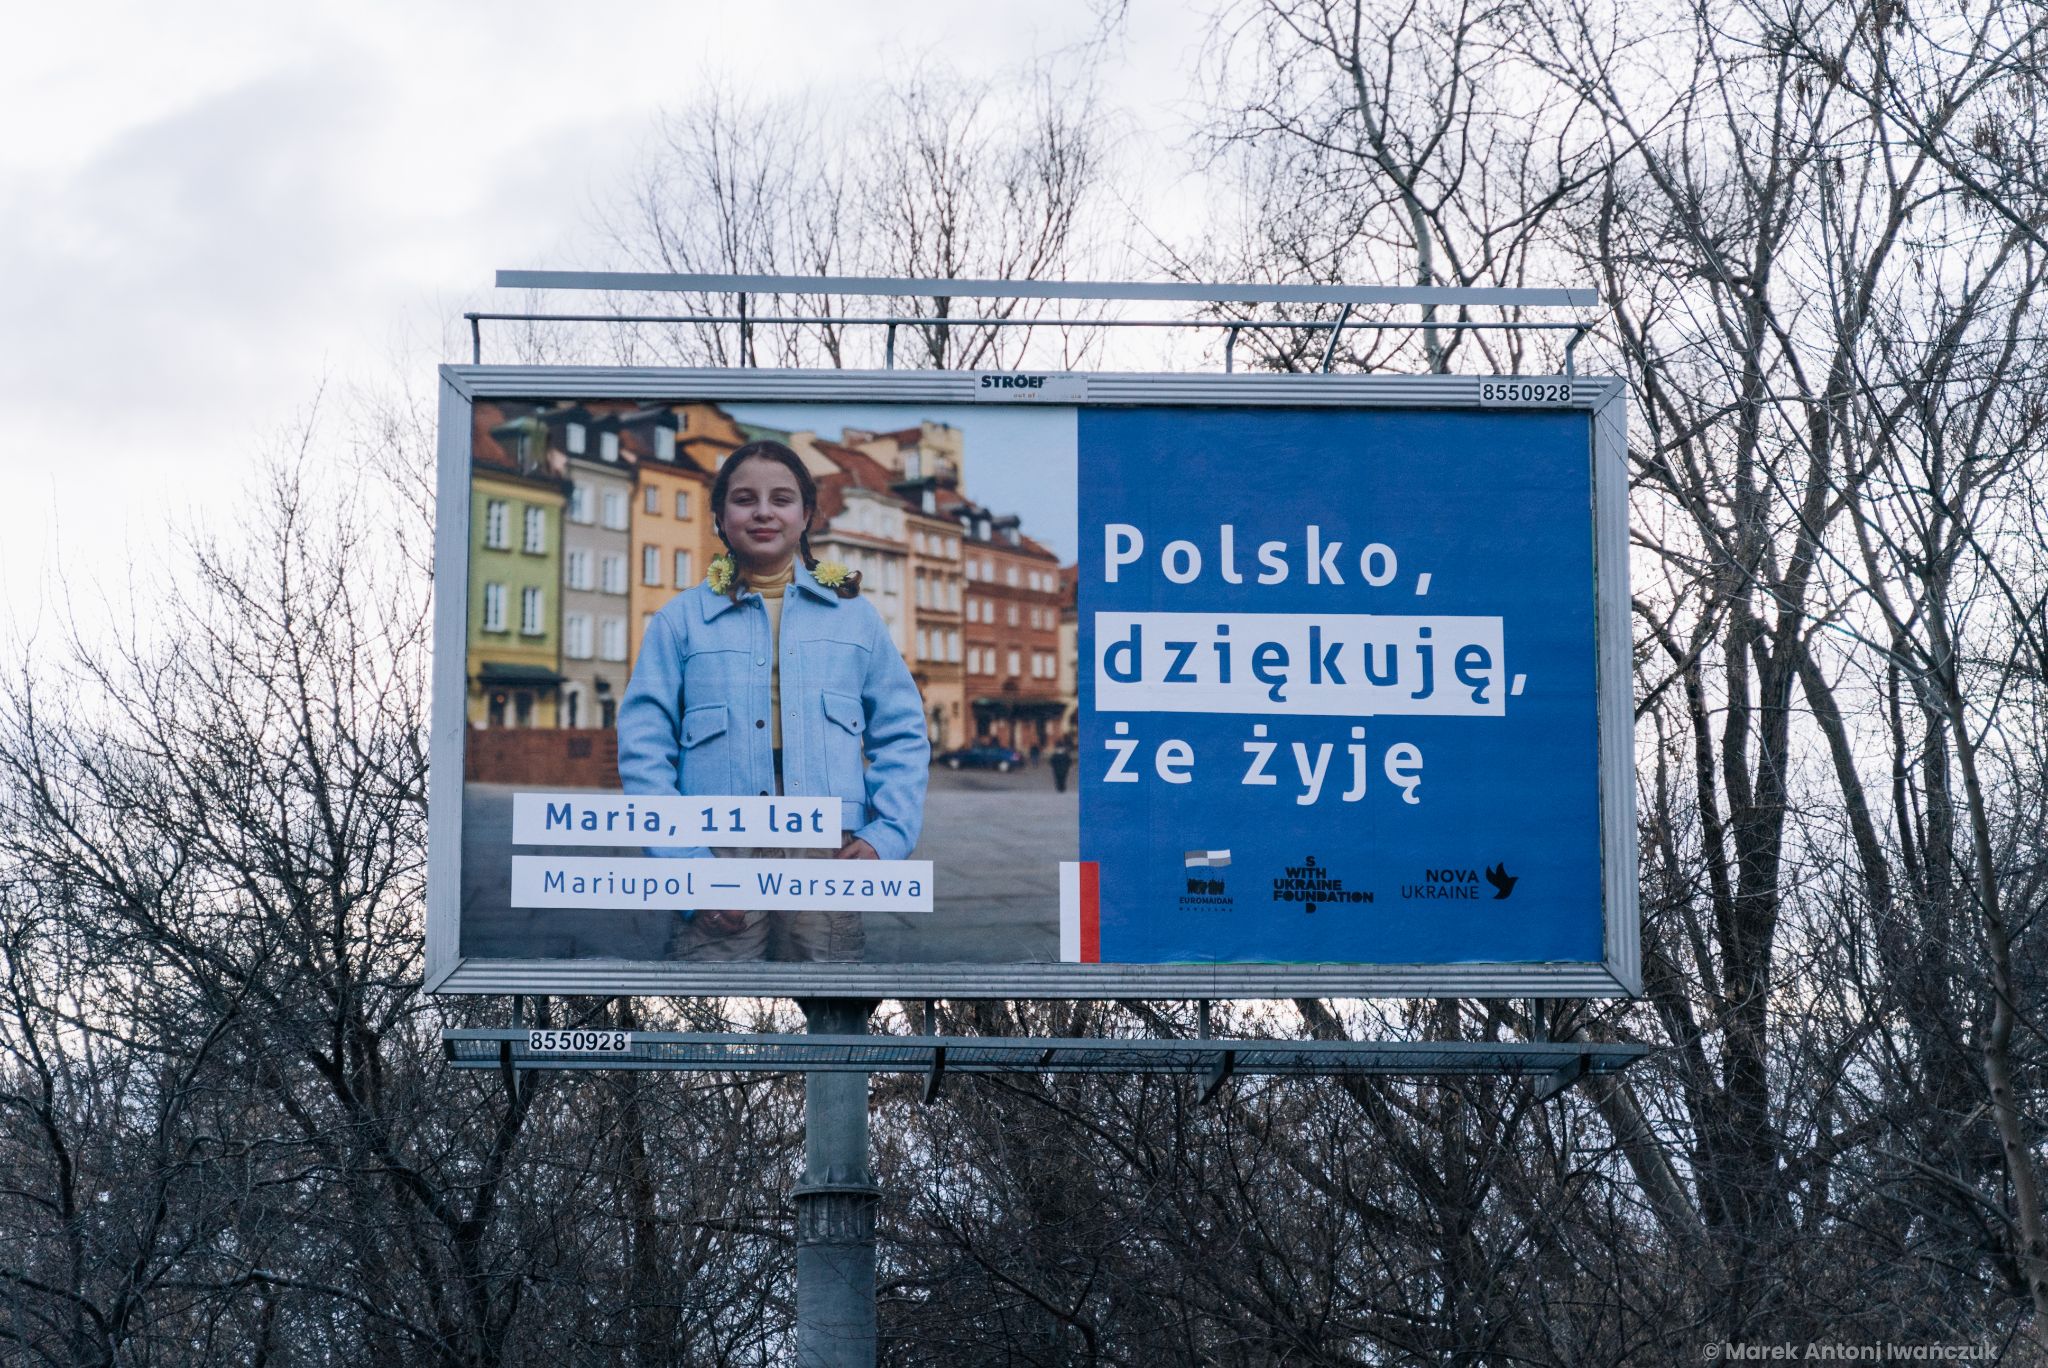 На вулицях польських міст з’явилися білборди “Дякую, Польще”. Розповідаємо про ініціативу